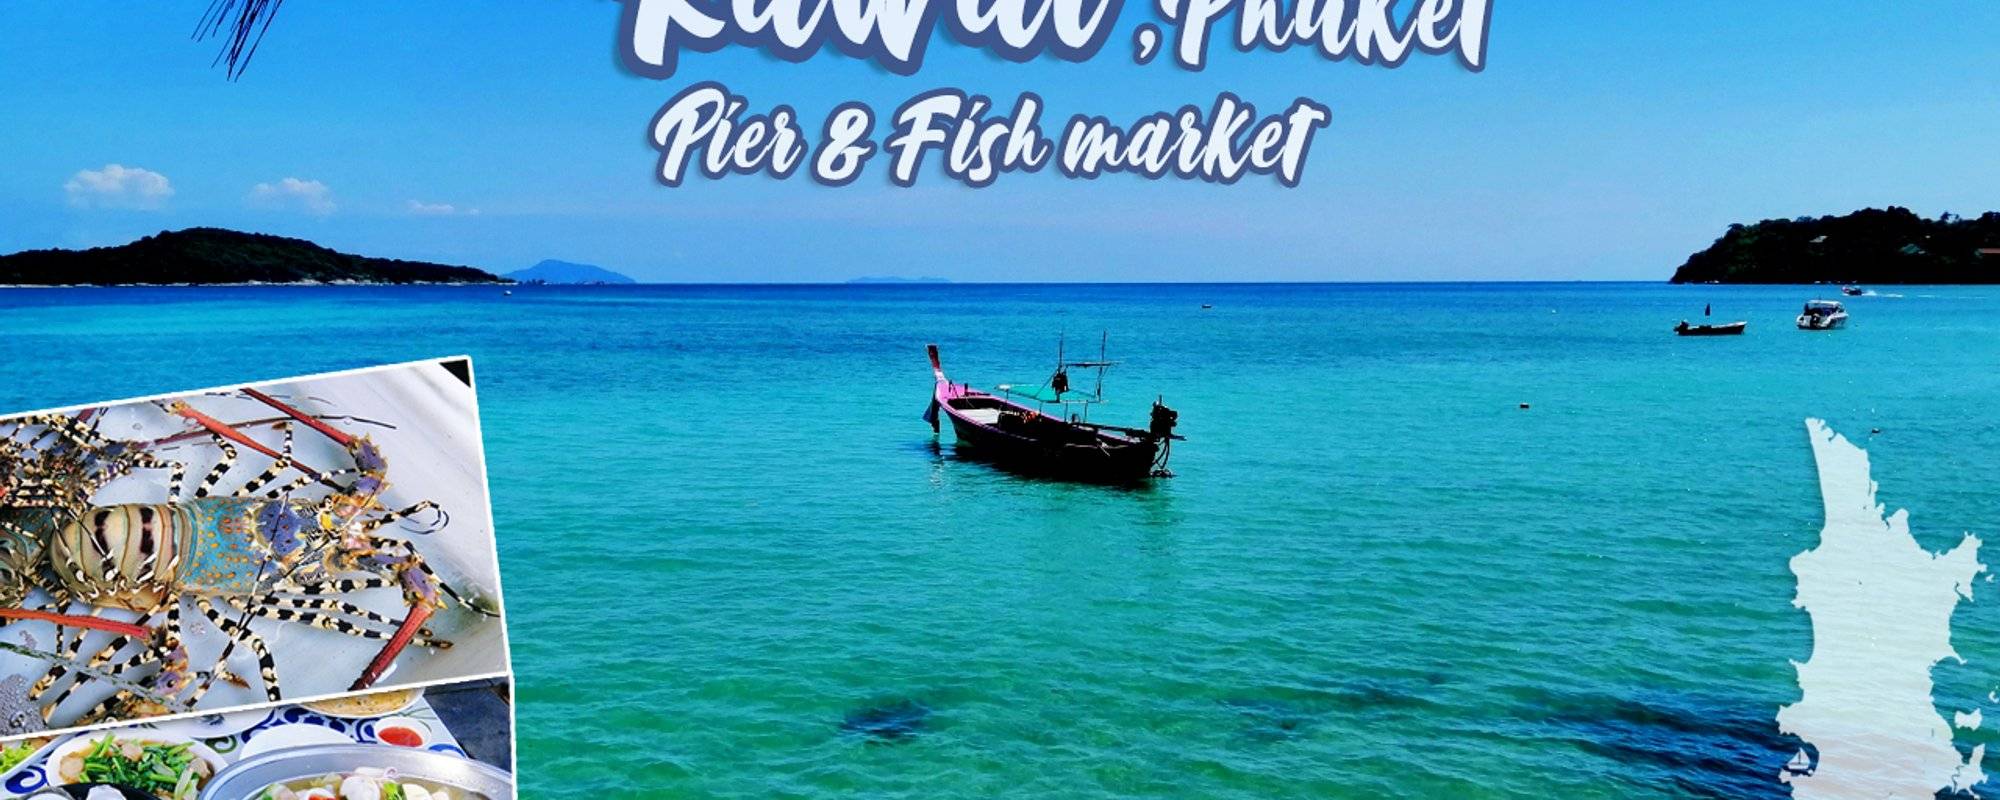 Rawai 🌴 landing 🏖️ pier & Fish 🐟🐡 market 🦑🐠 [Phuket, Thailand]